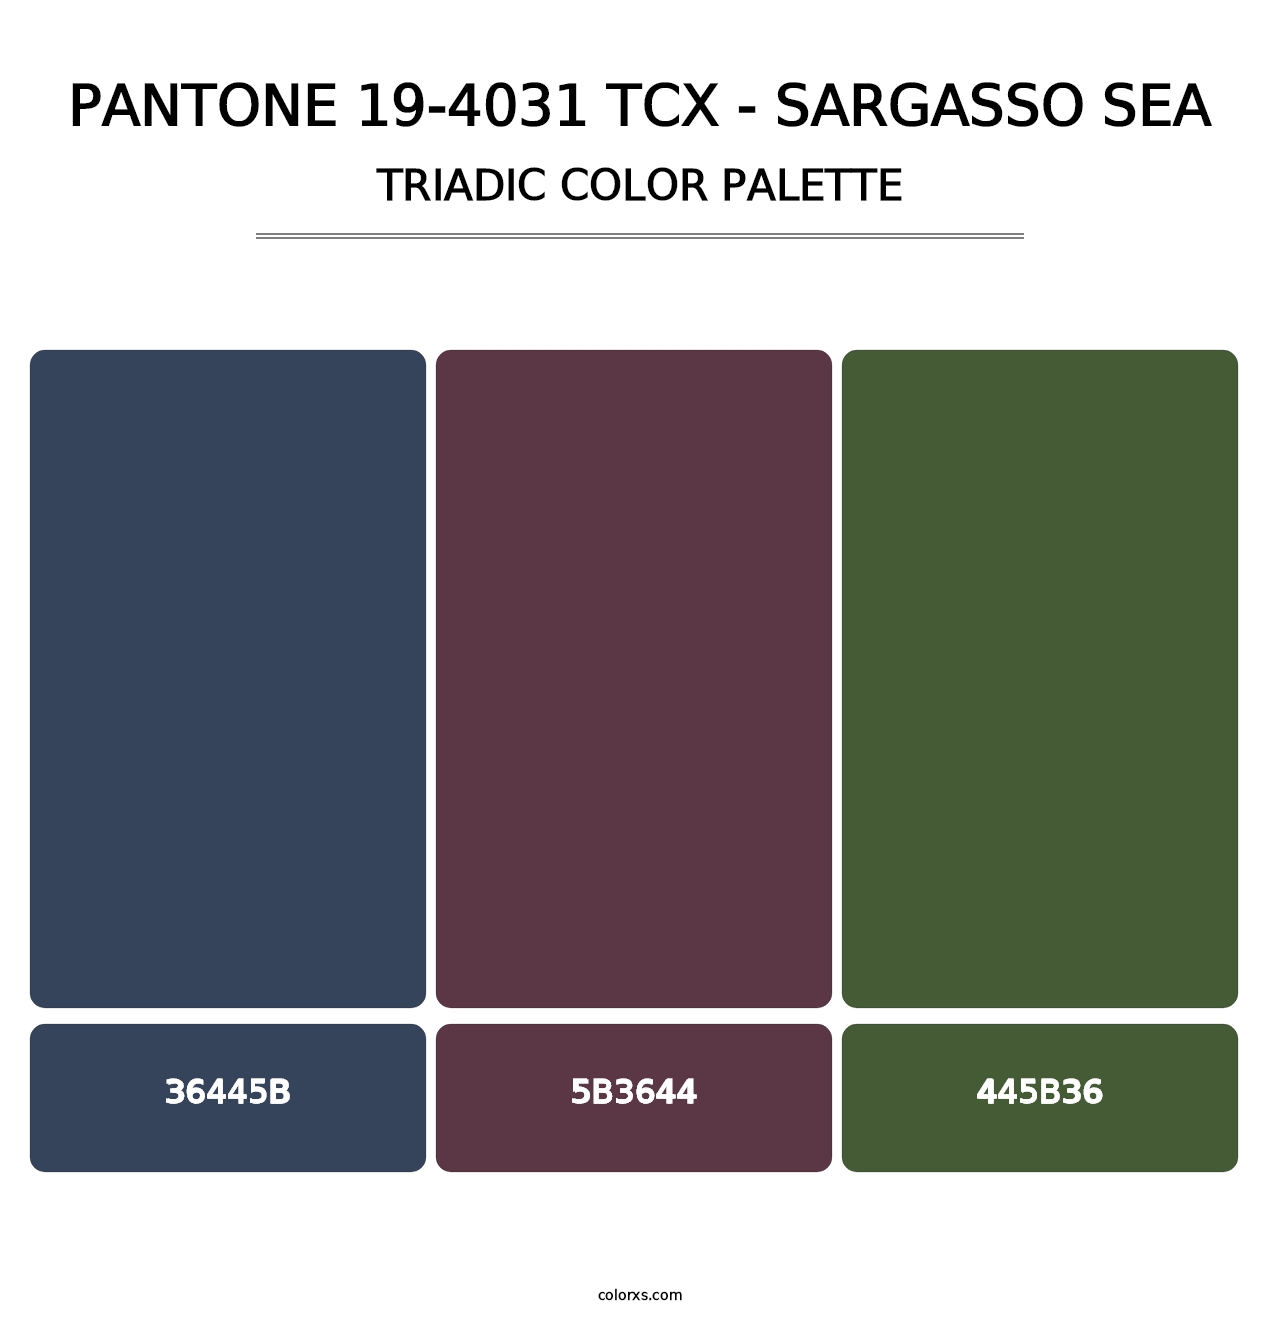 PANTONE 19-4031 TCX - Sargasso Sea - Triadic Color Palette